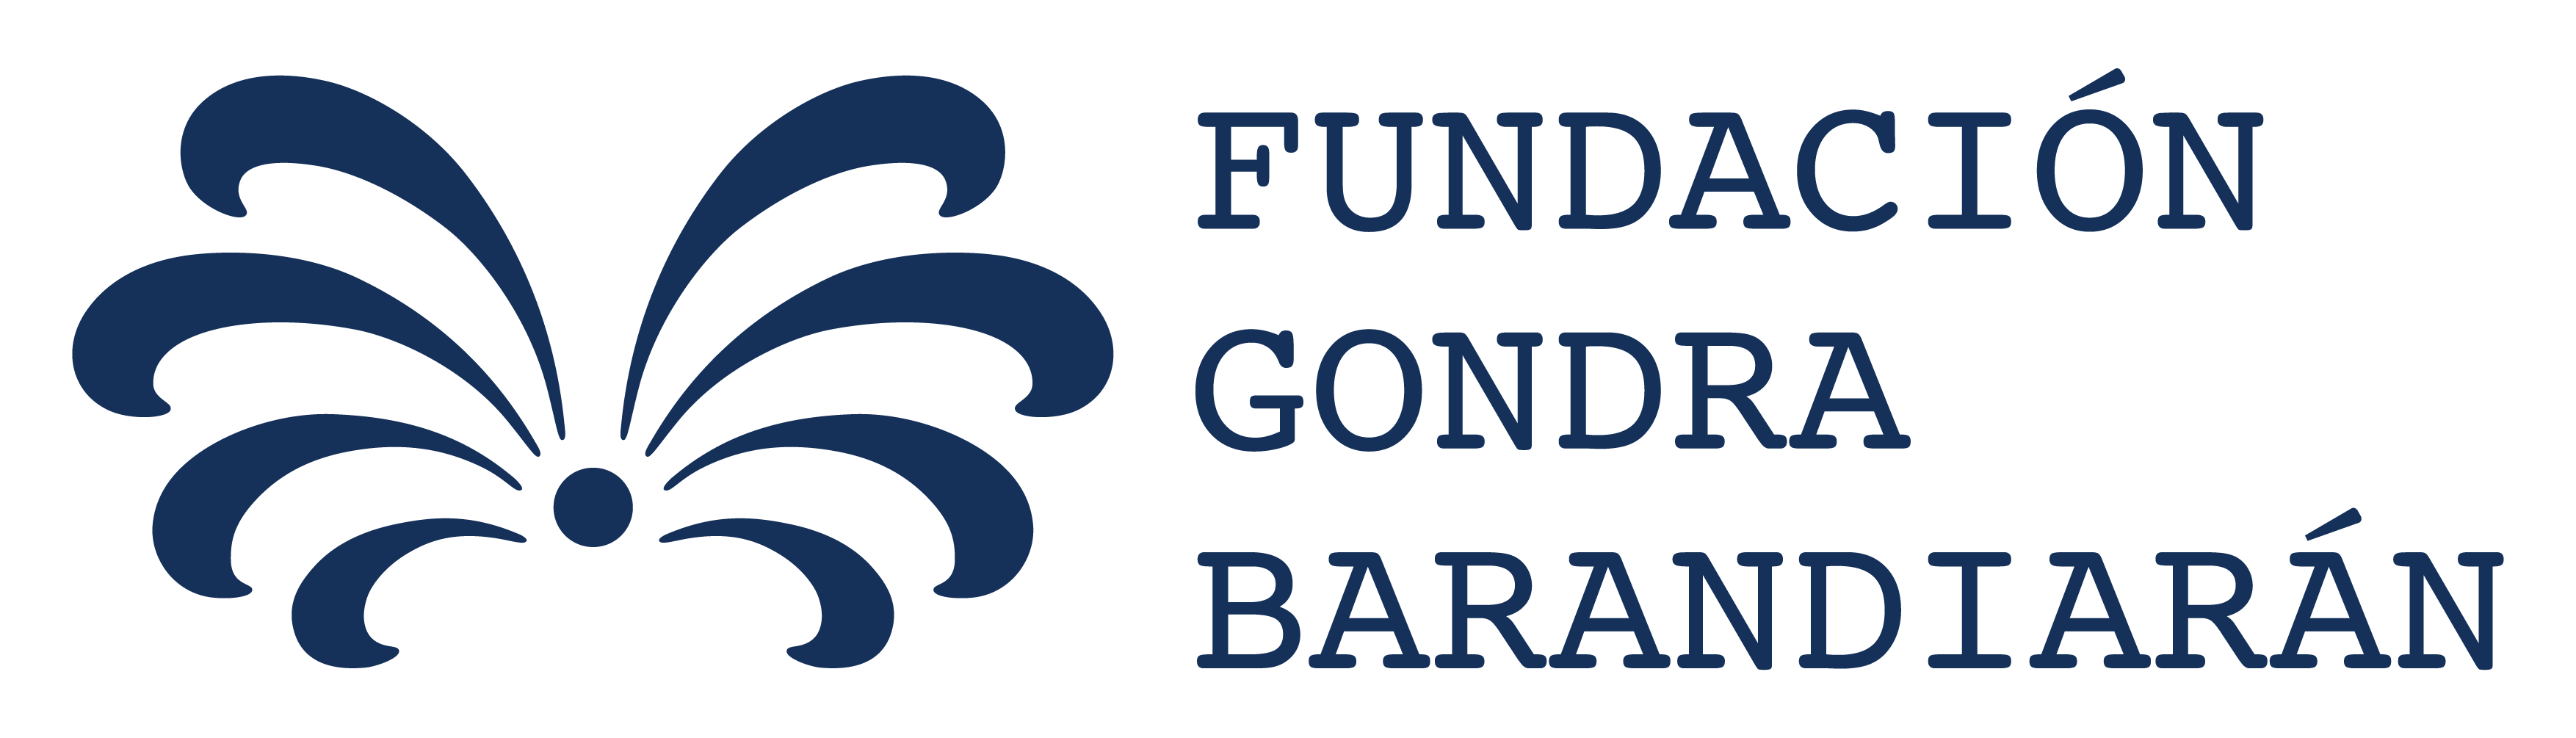 GIZAKIA - Fundación Gondra Barandiarán